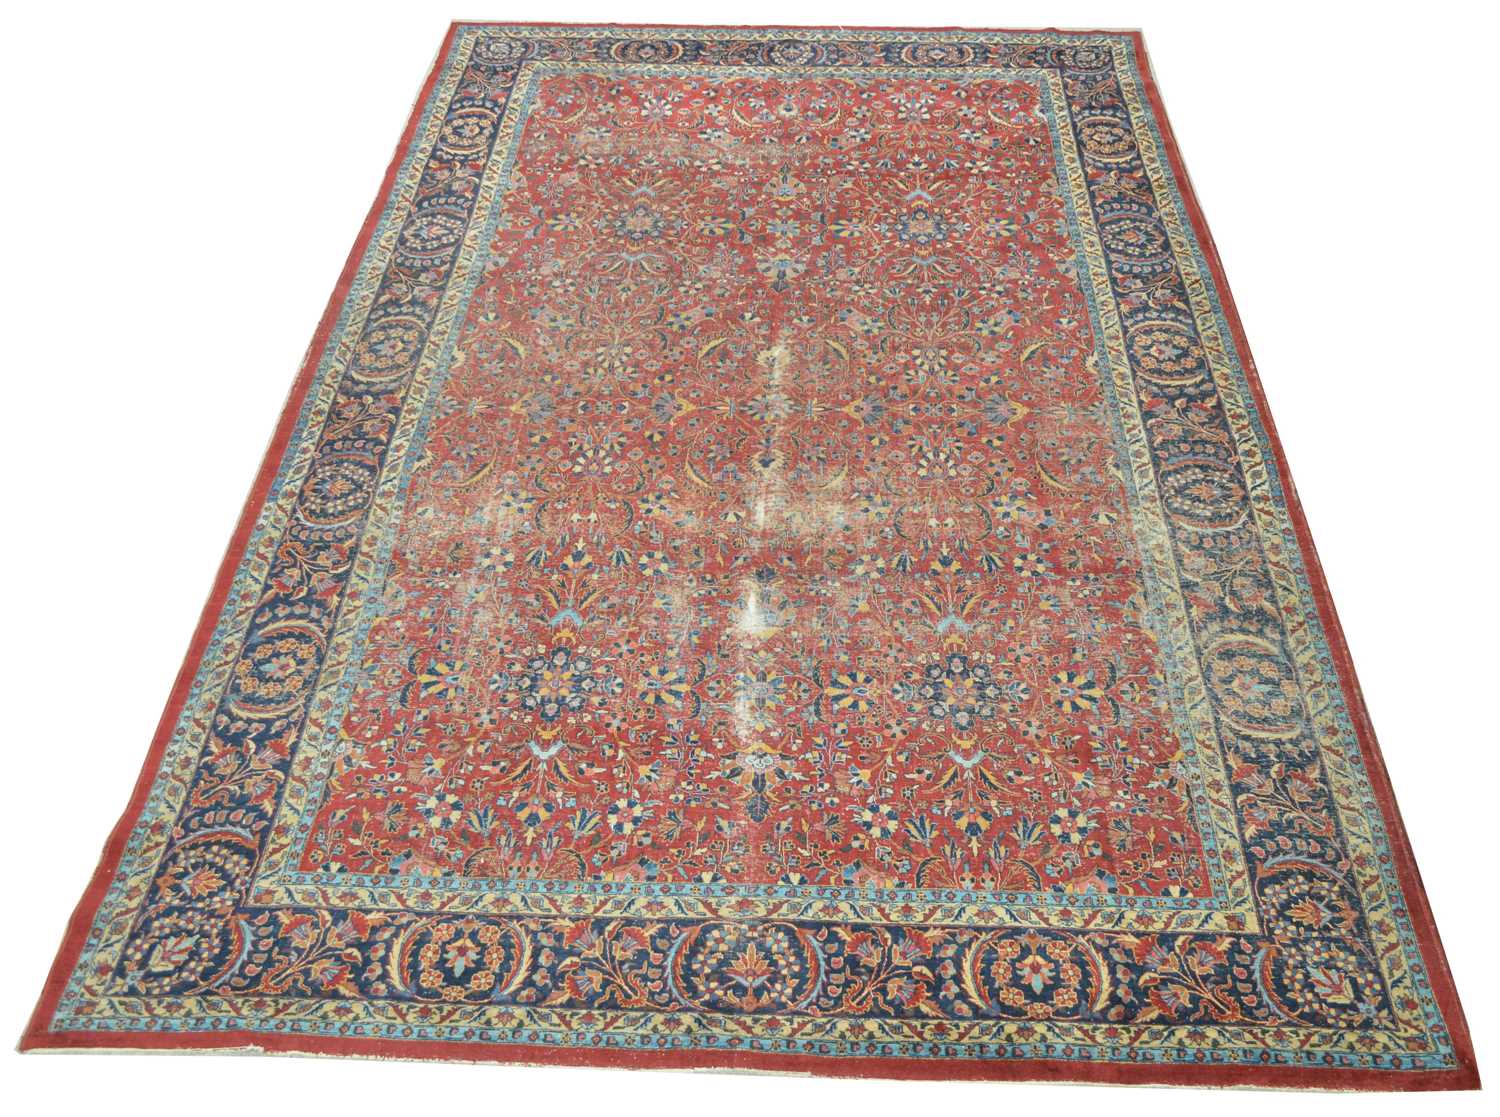 Lot 657 - Antique Tabriz carpet